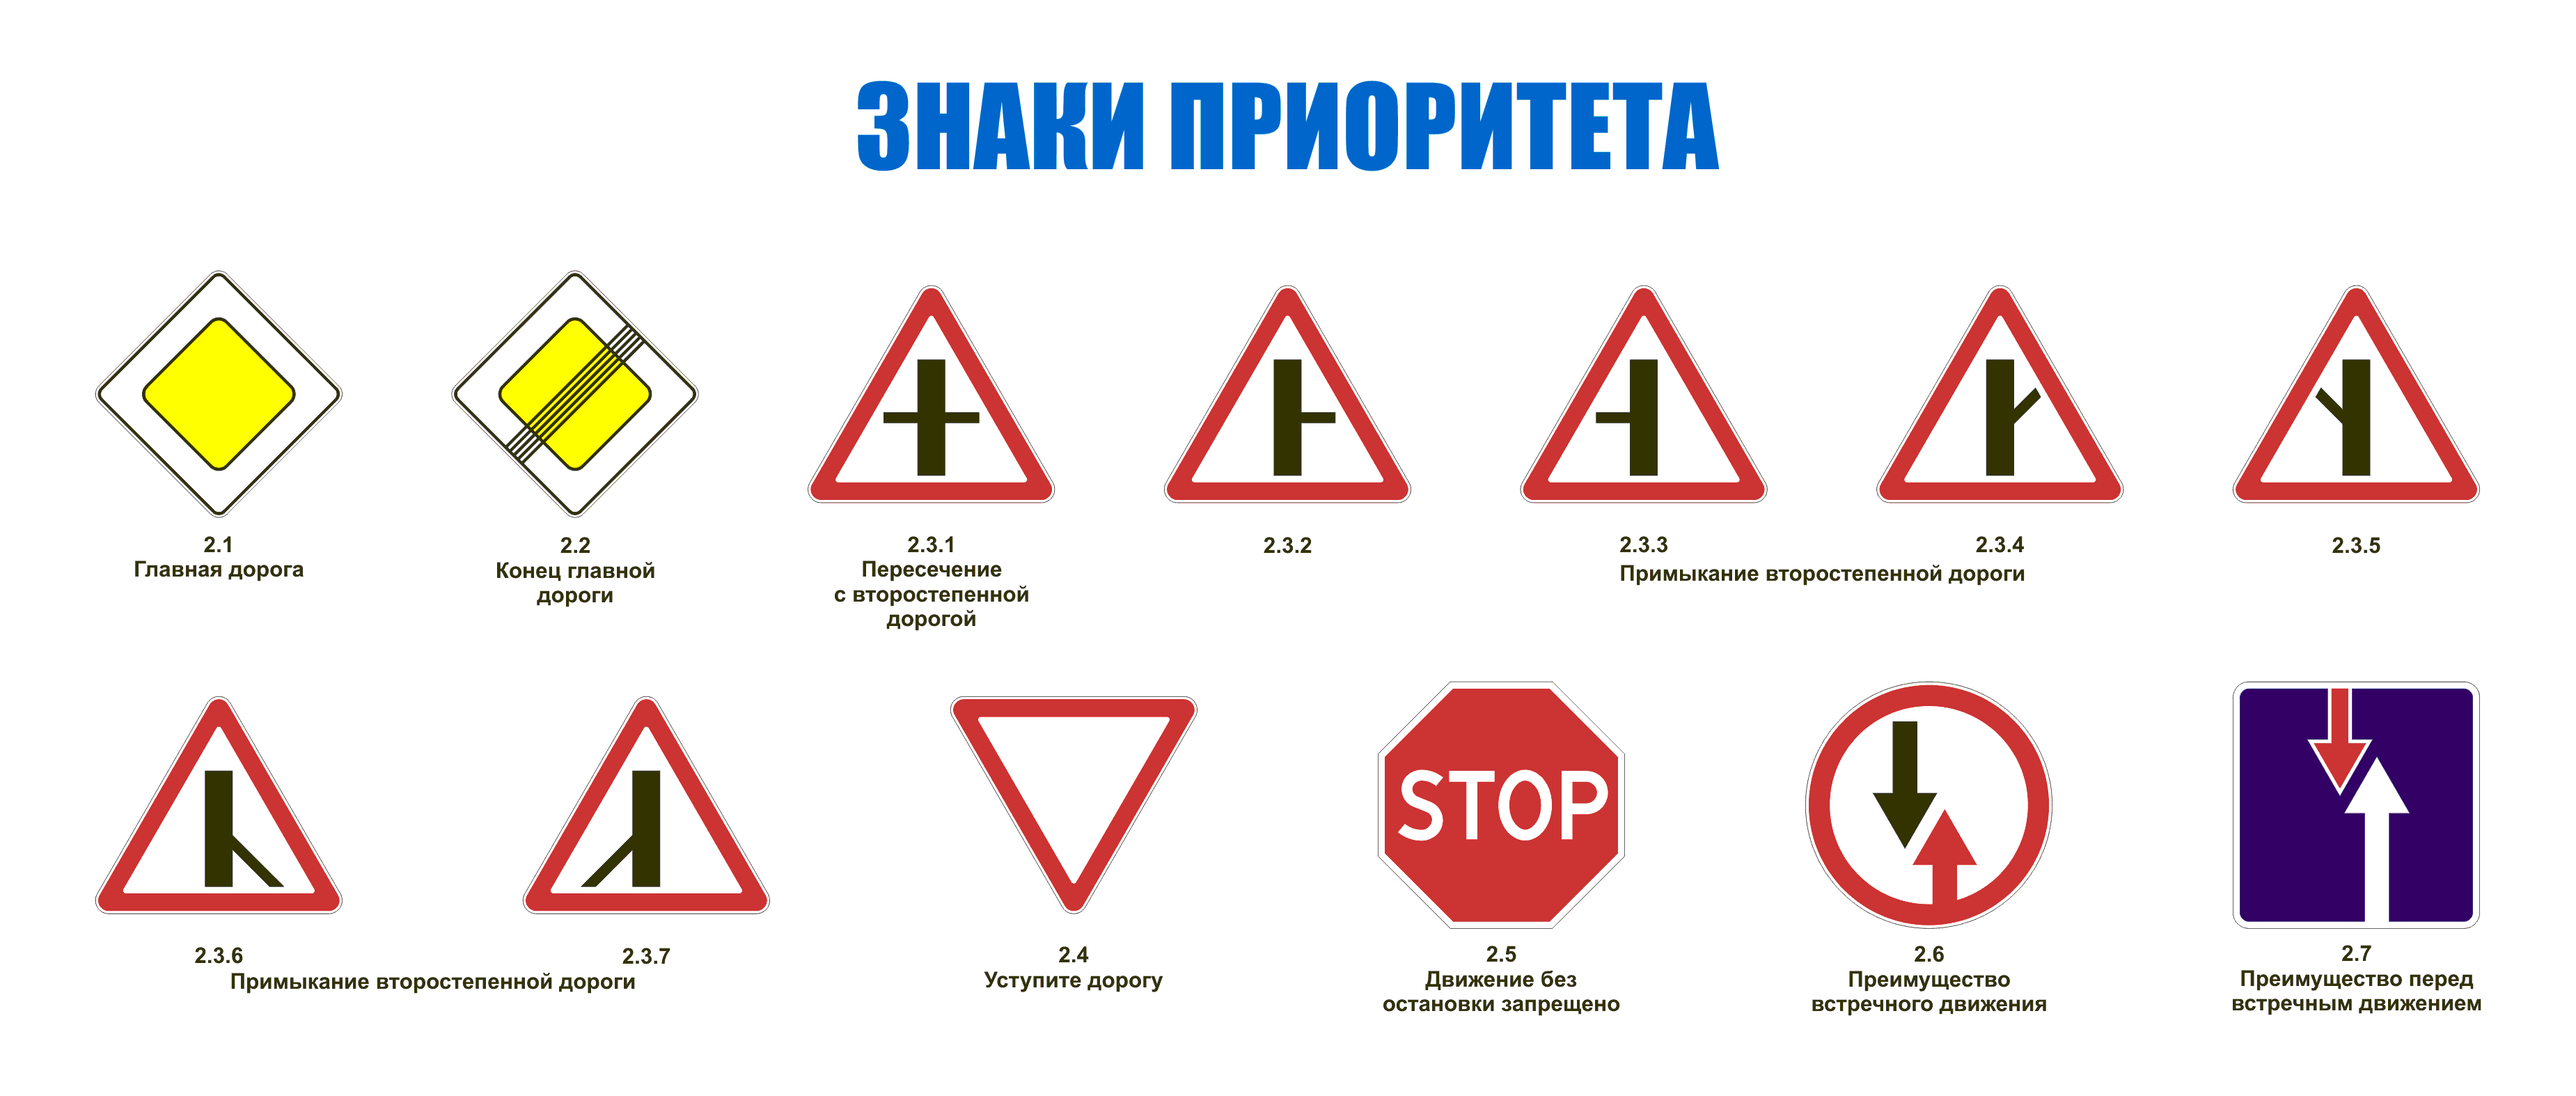 Які дорожні знаки бувають з групи знаків пріоритету